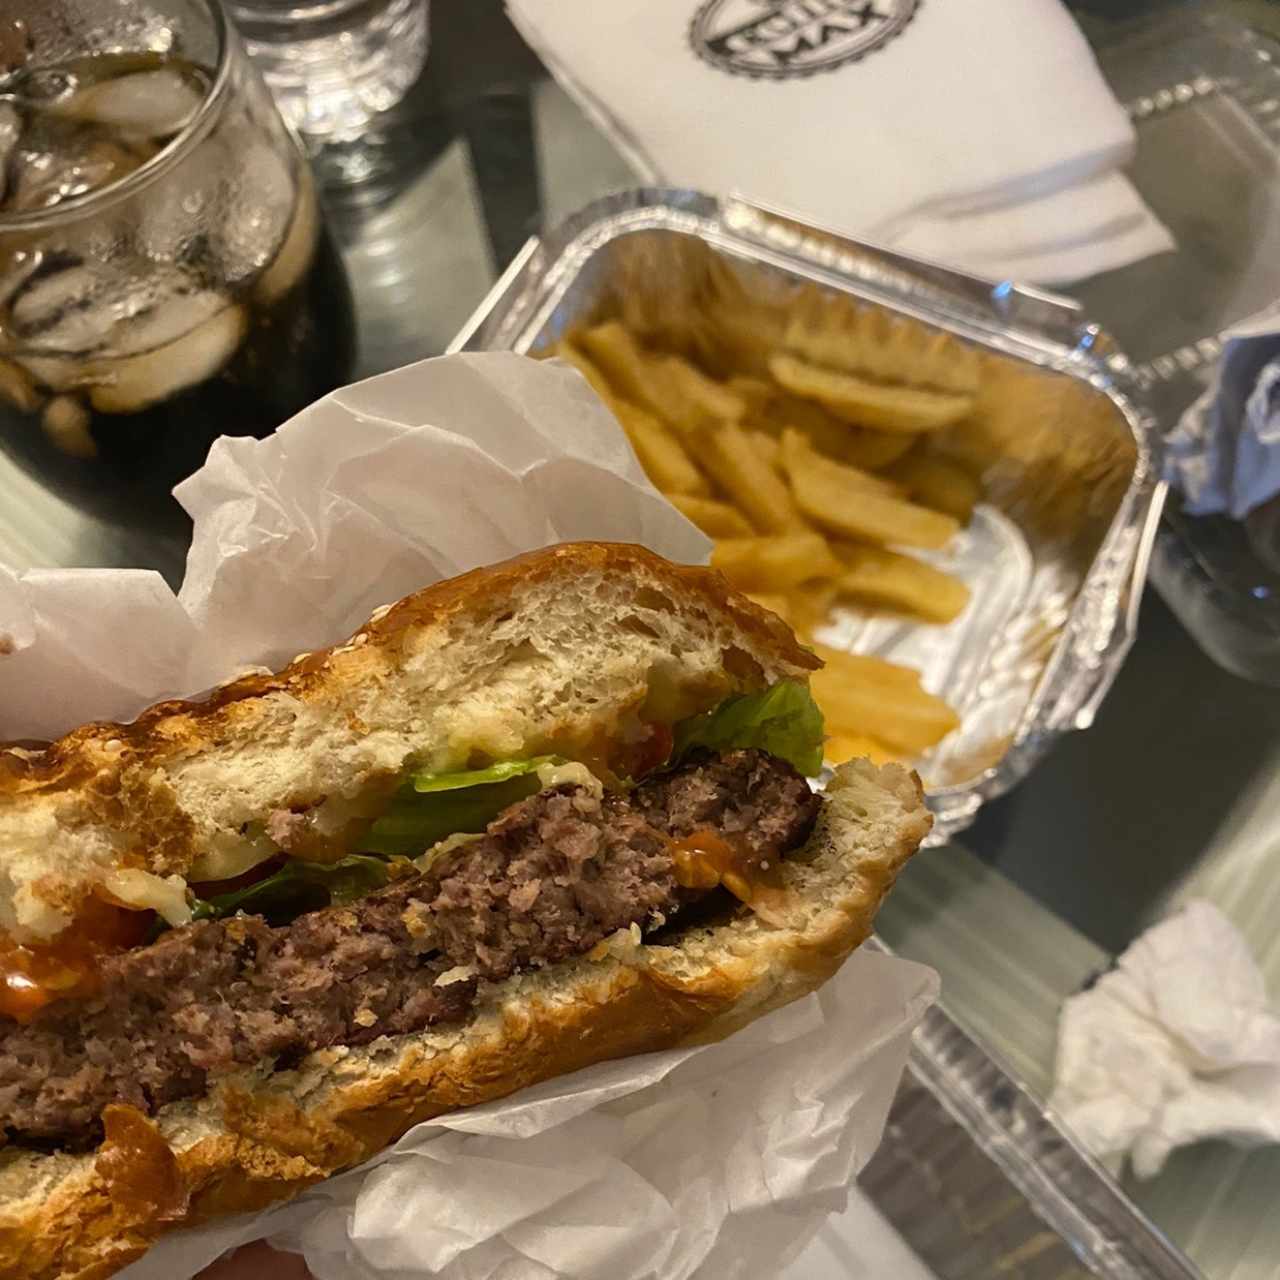 Platos - Combo Max burger